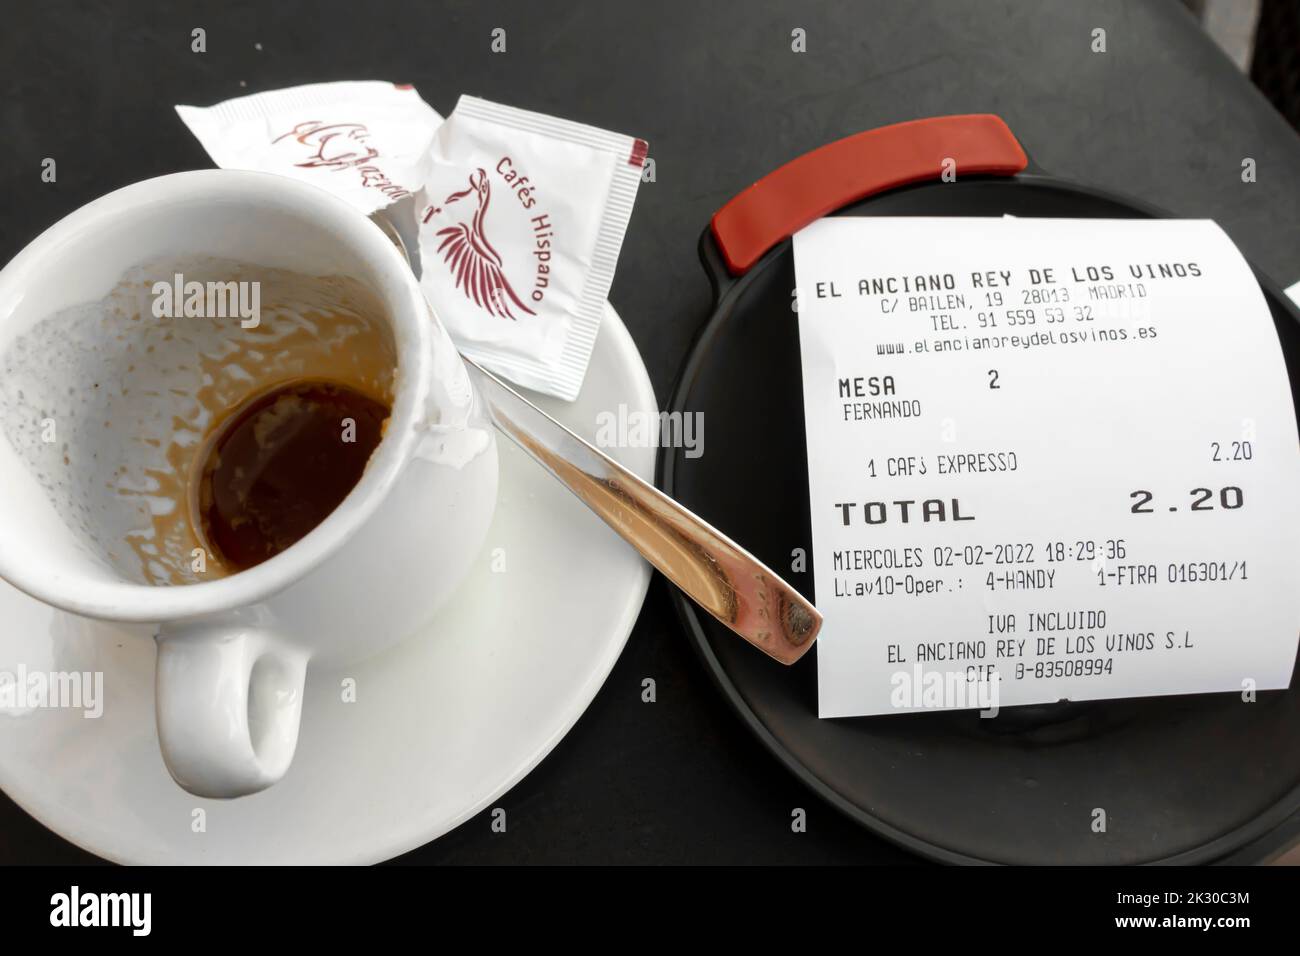 Caffè espresso tazza appena svuotato con una ricevuta per un totale DI EURO 2,20. Caffetteria El Anciano Rey, Madrid, Spagna Foto Stock